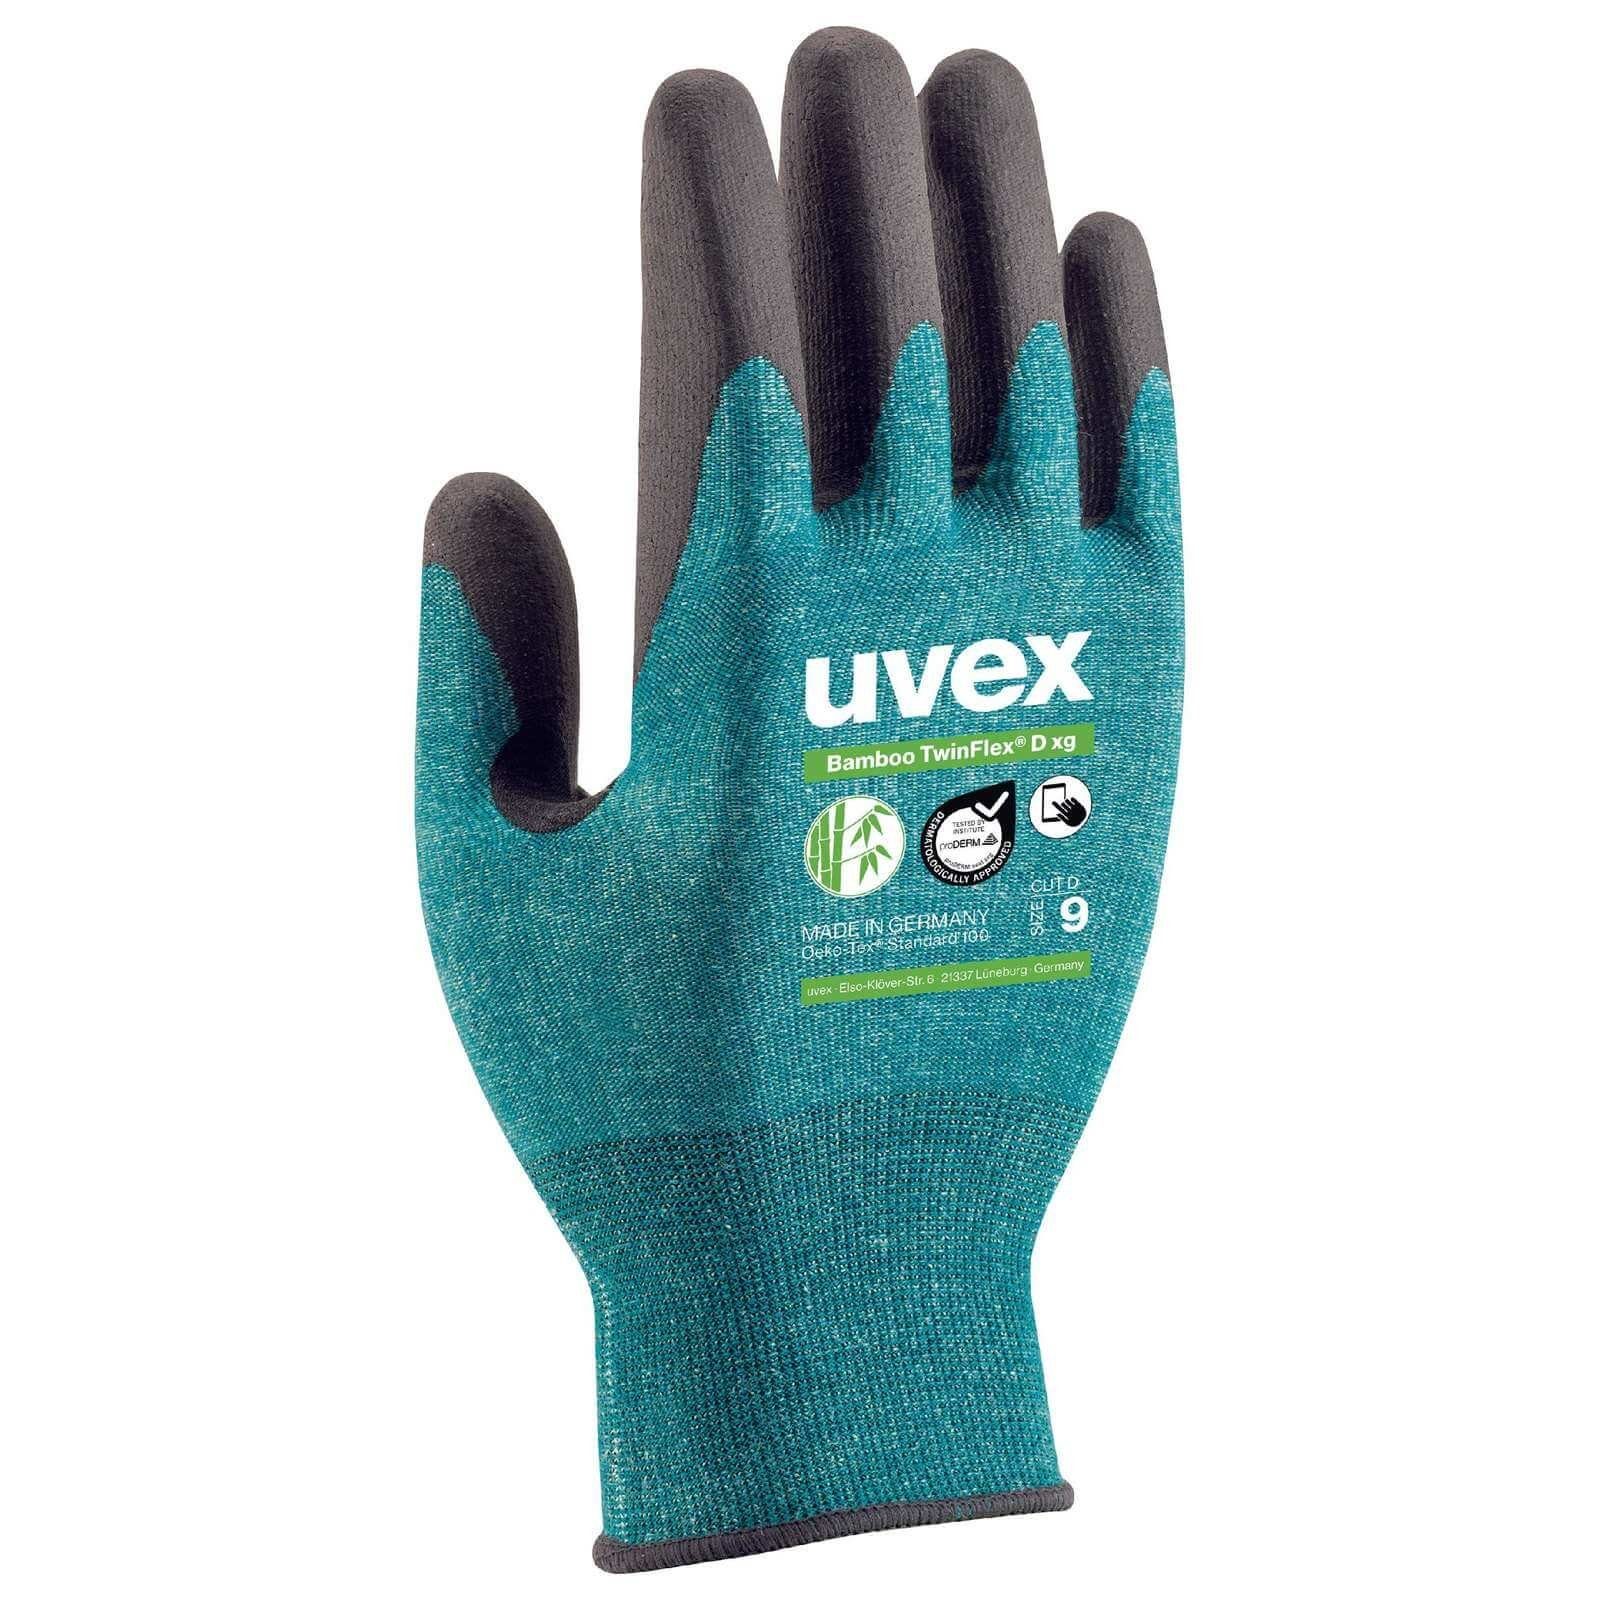 xg Bamboo Schnittschutzhandschuhe Cut D Uvex TwinFlex 5 uvex Mechaniker-Handschuhe (Spar-Set) D Paar 60090